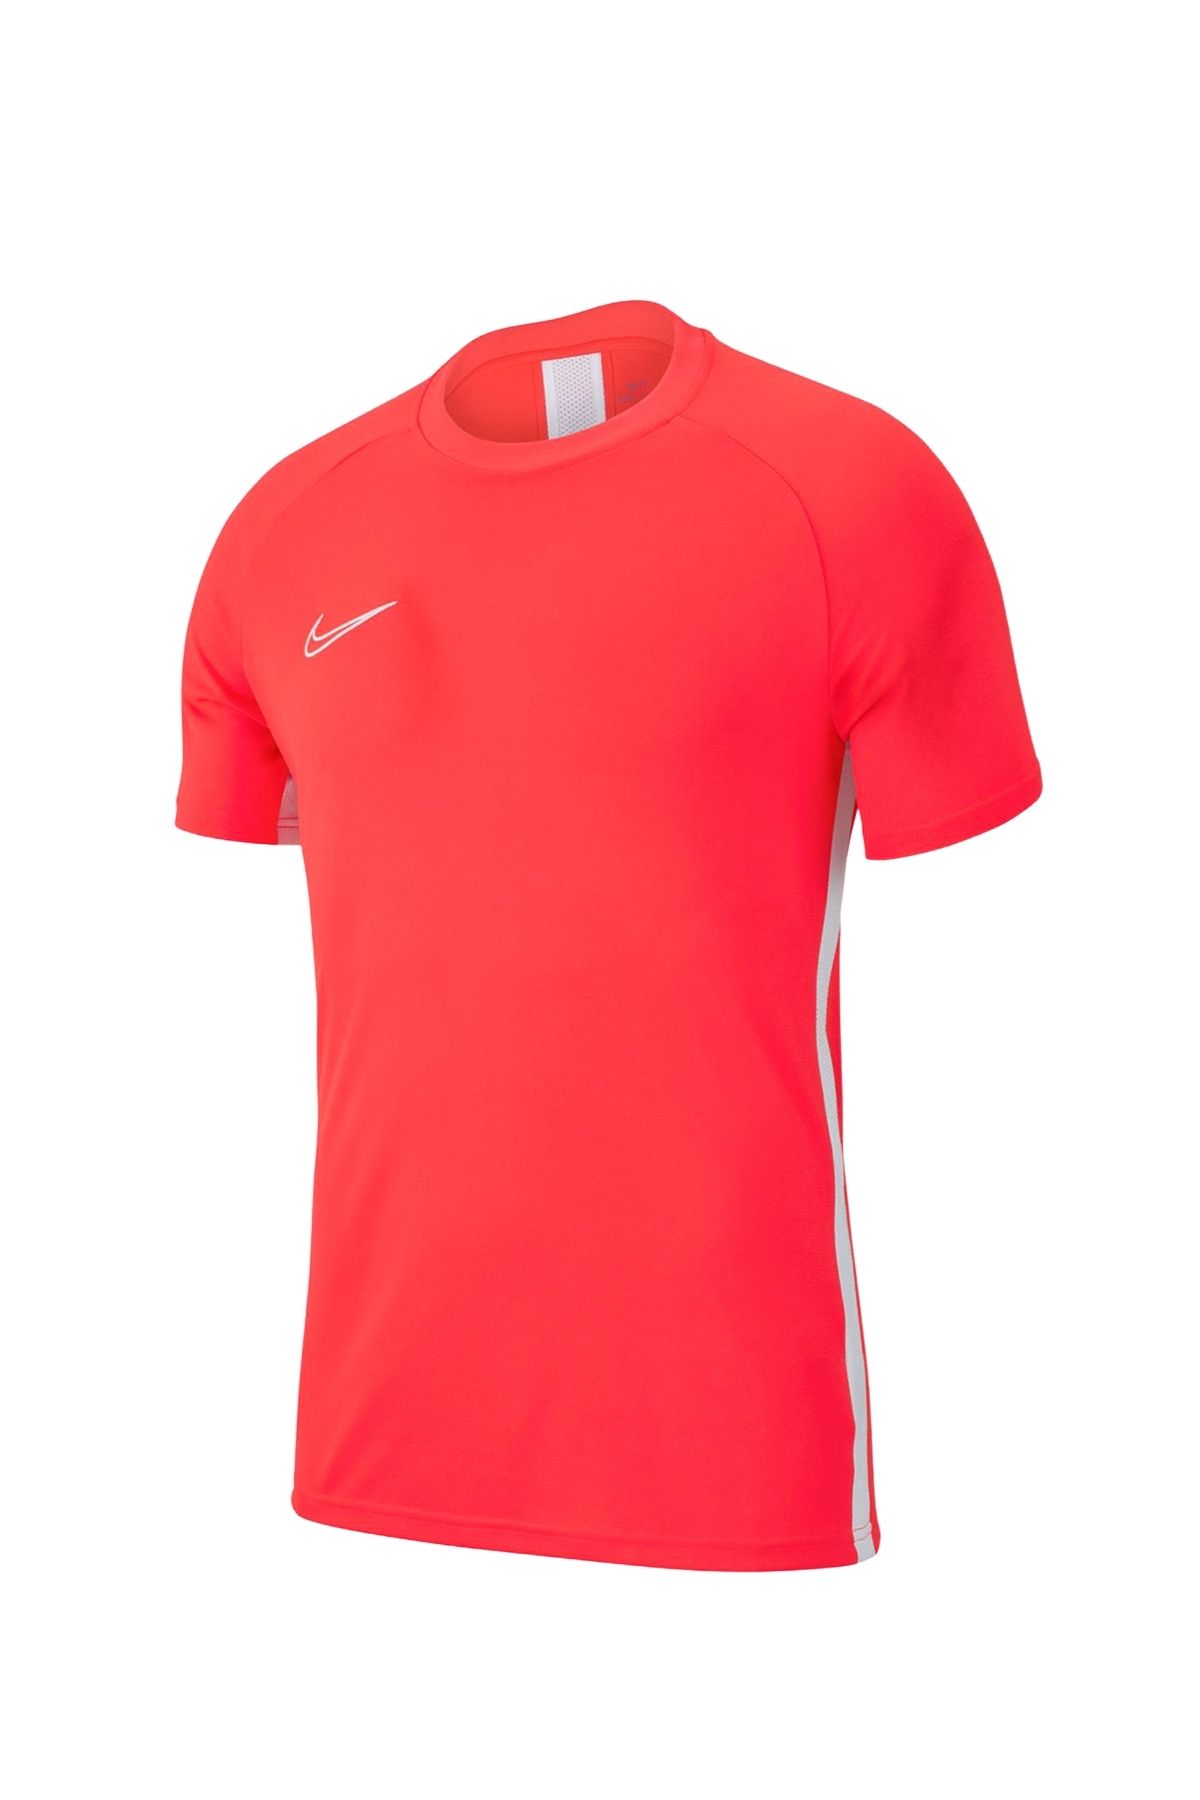 Nike Erkek Kırmızı T-shirt Aj9088-657-657